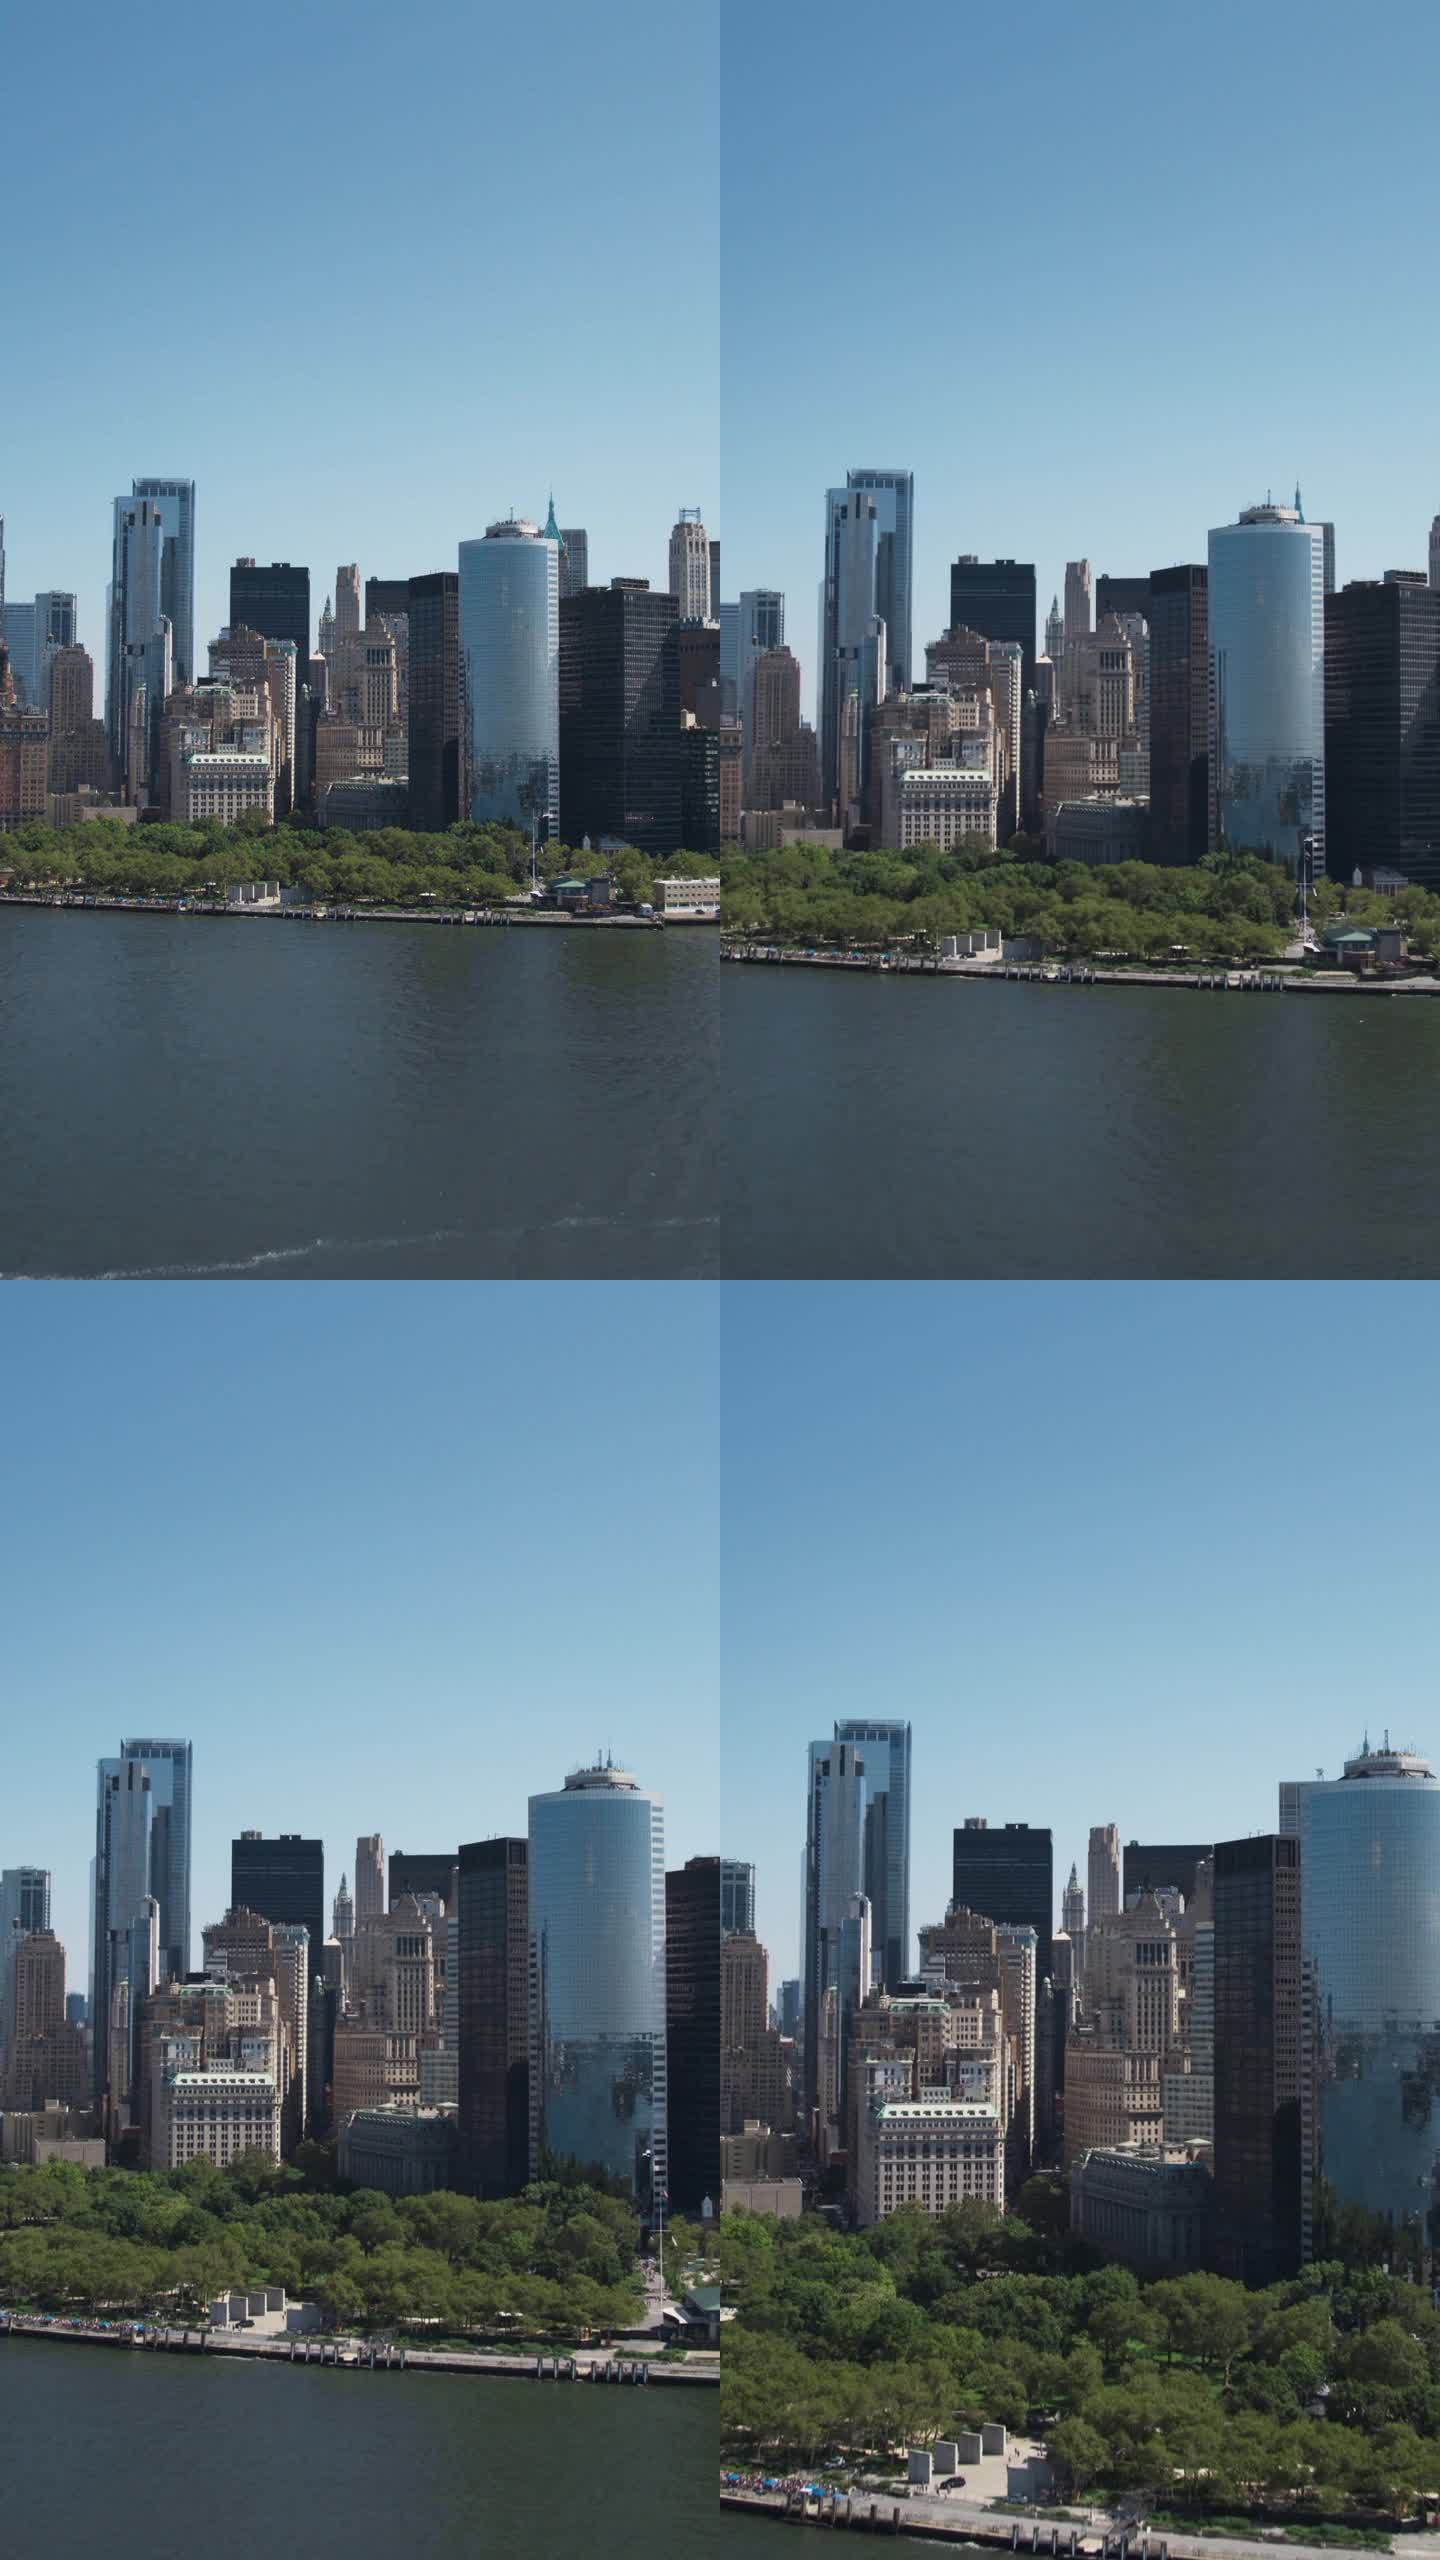 垂直屏幕:曼哈顿建筑鸟瞰图。从直升机上拍摄华尔街金融区全景。哈德逊河水运办公楼景观